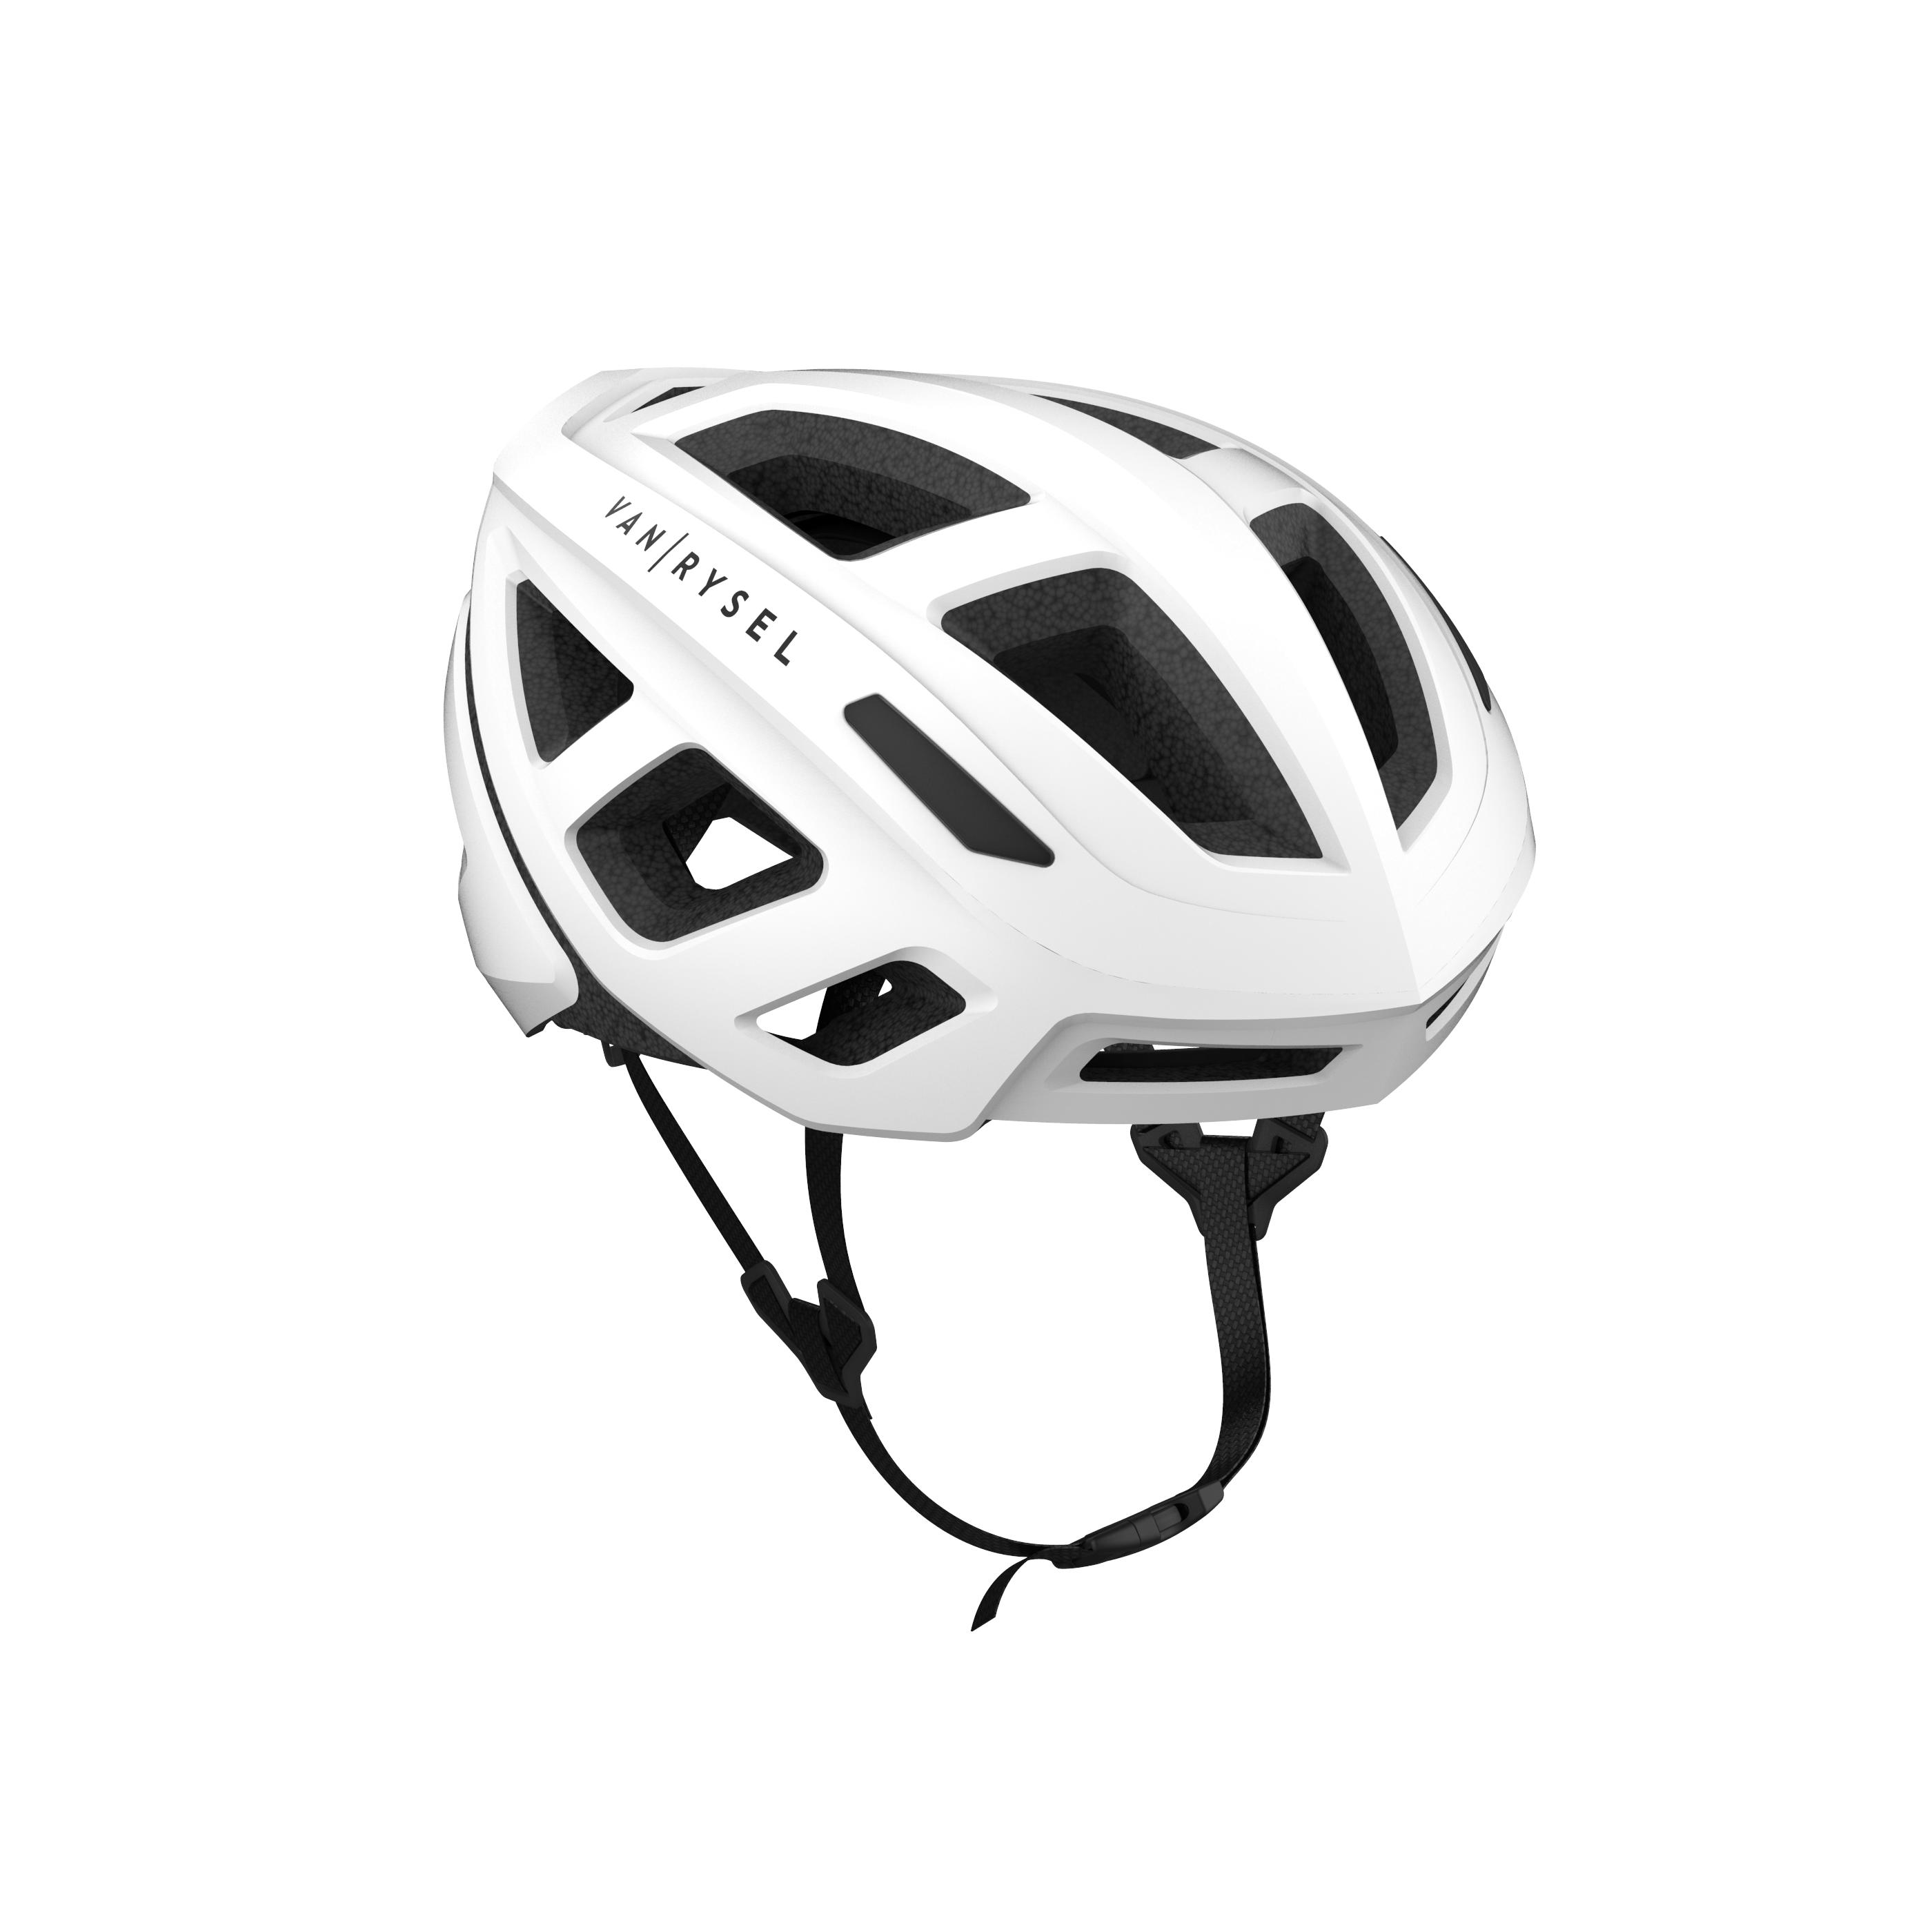 Road Bike Helmet RoadR 500 White Snow white Van rysel Decathlon